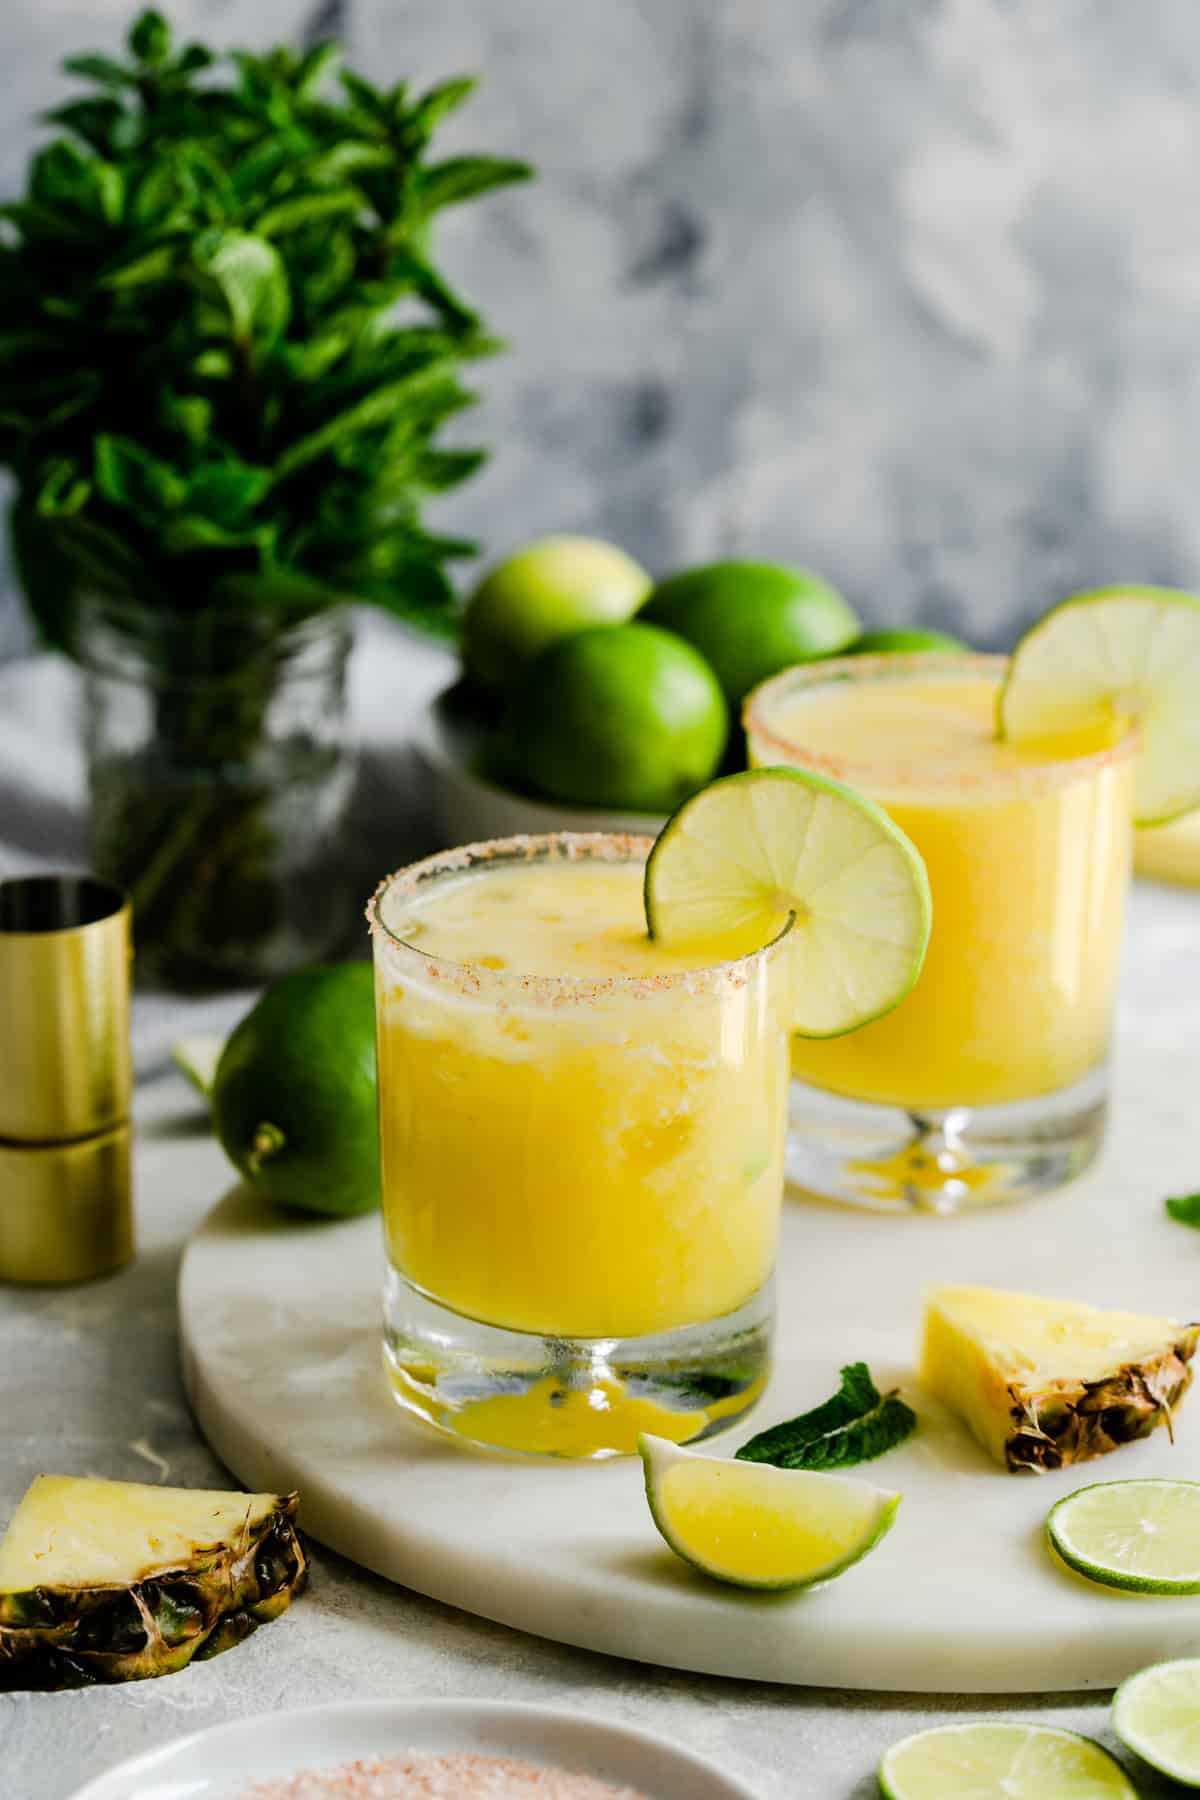 https://annabanana.co/wp-content/uploads/2019/07/Frozen-Pineapple-Margaritas-8.jpg